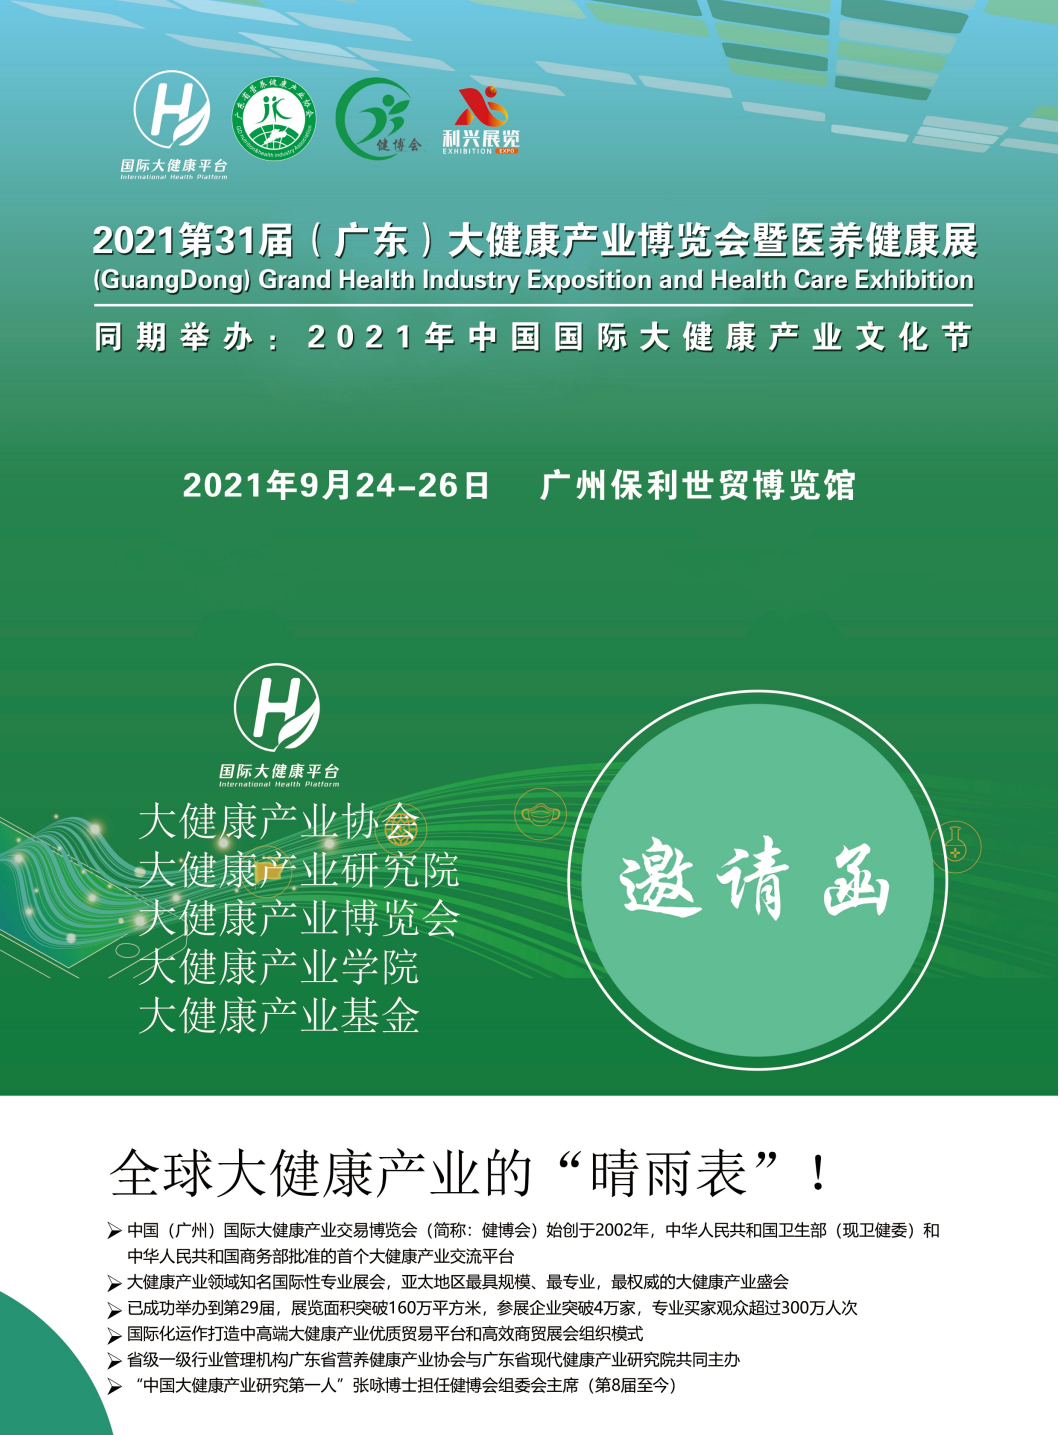 2021第31届(广东)大健康产业博览会暨医养健康展